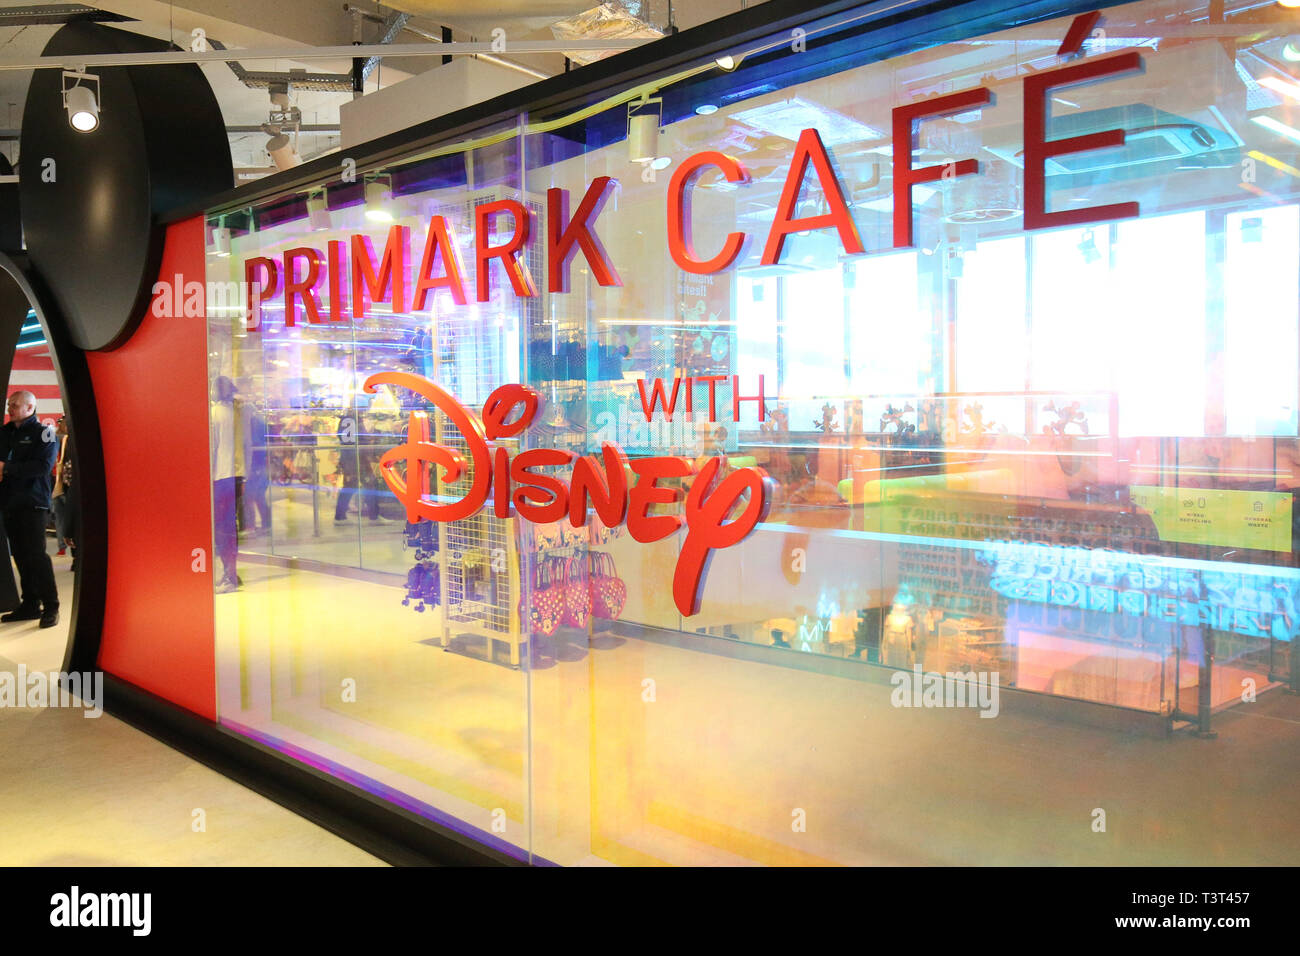 El Primark Cafe con Disney después de más grande del mundo de Primark Store abrió en Birmingham el jueves por la mañana. Foto de stock